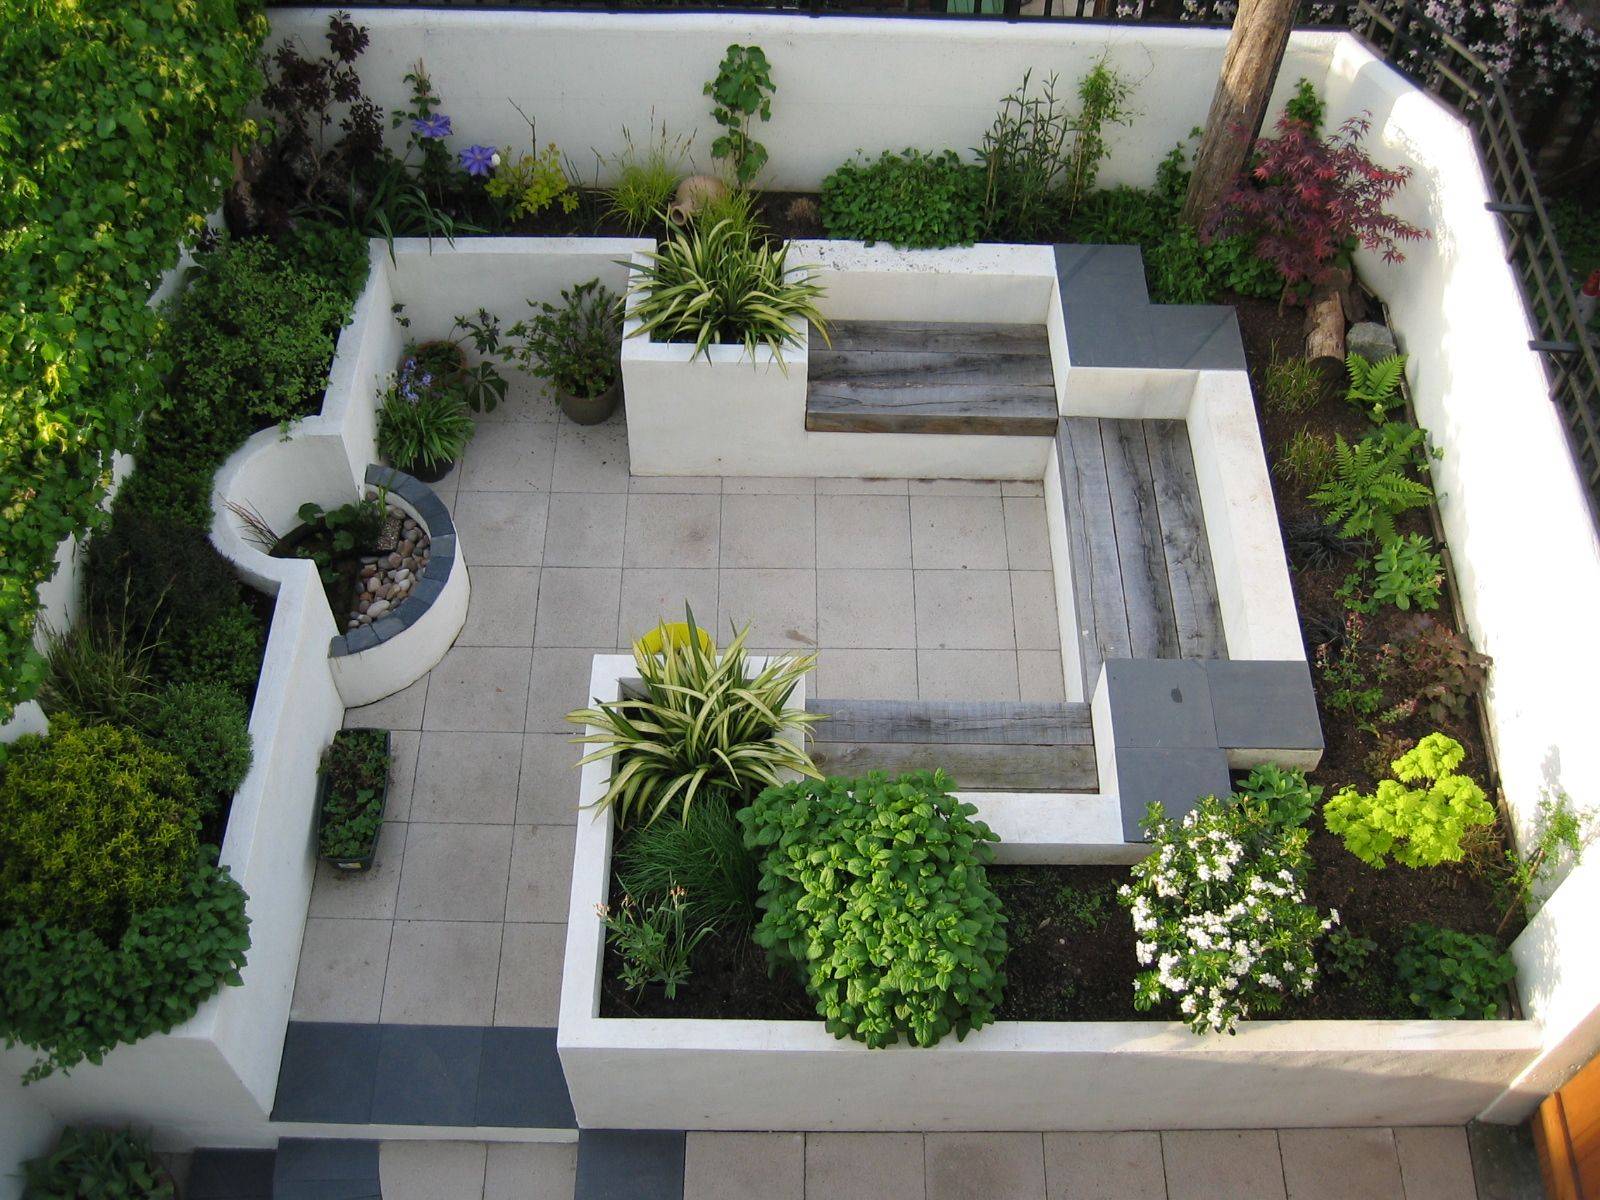 Modernlandscapedesign Courtyard Gardens Design